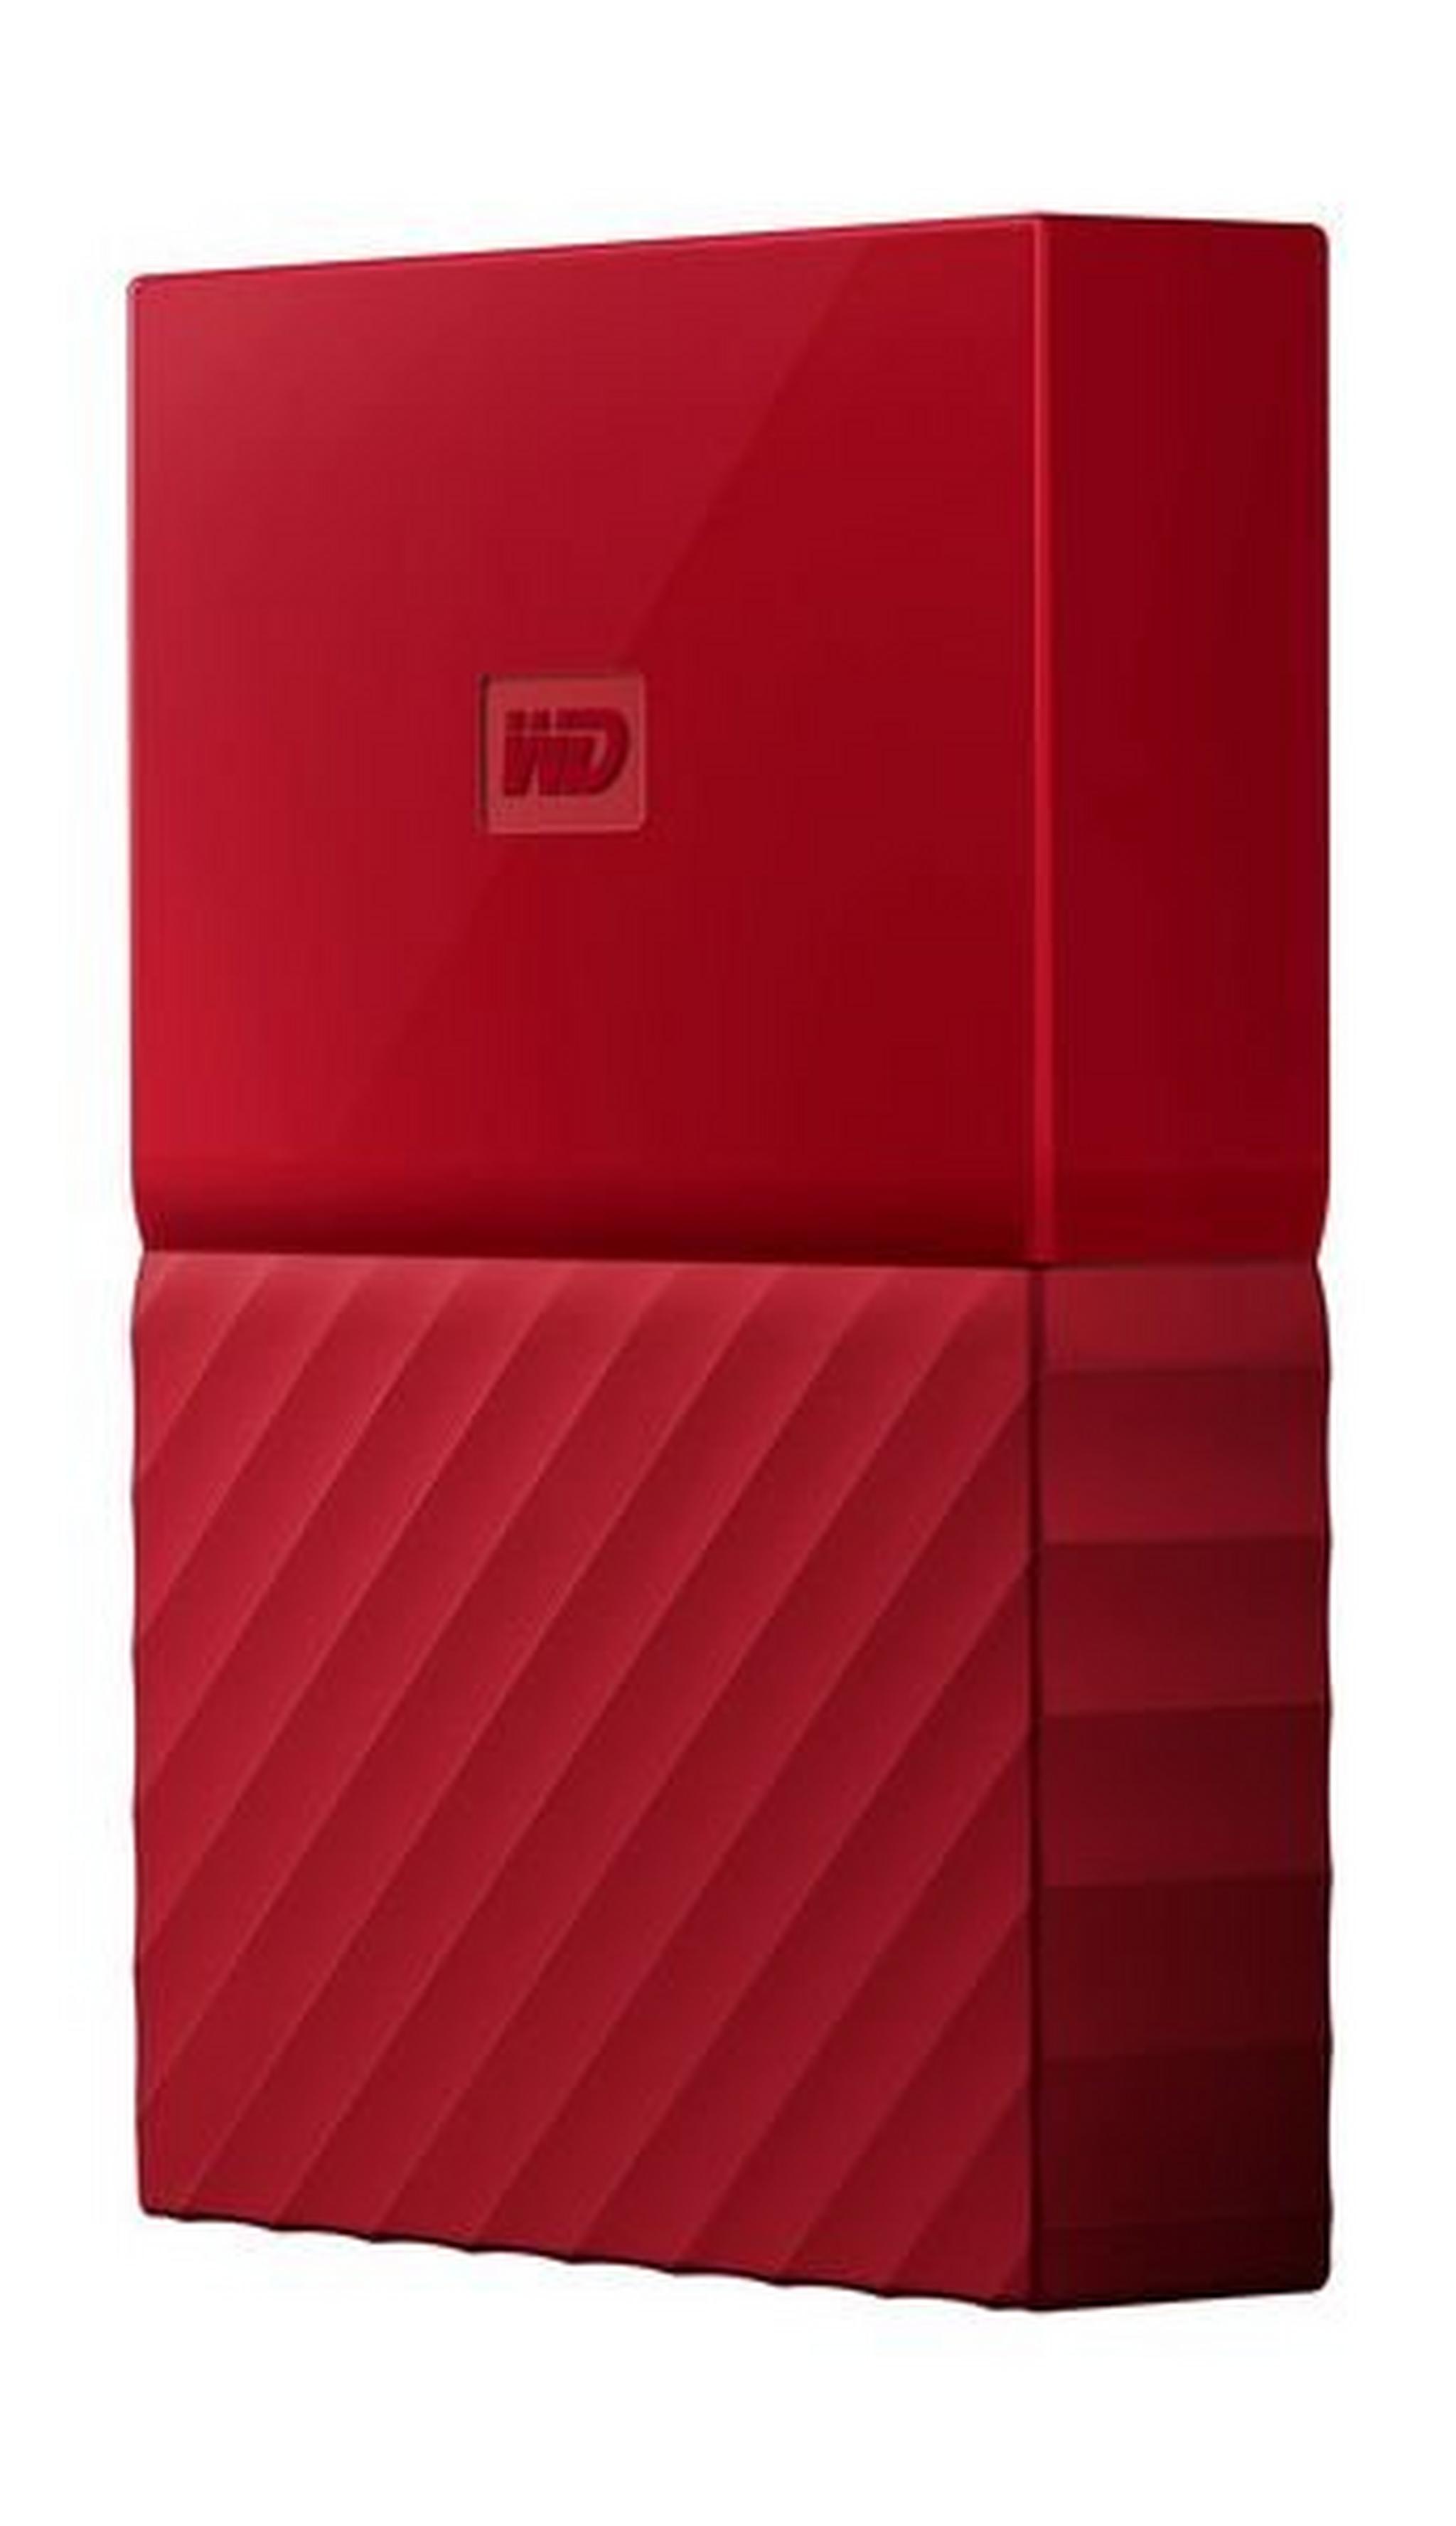 WD 2TB My Passport USB 3.0 External Hard Drive - Red